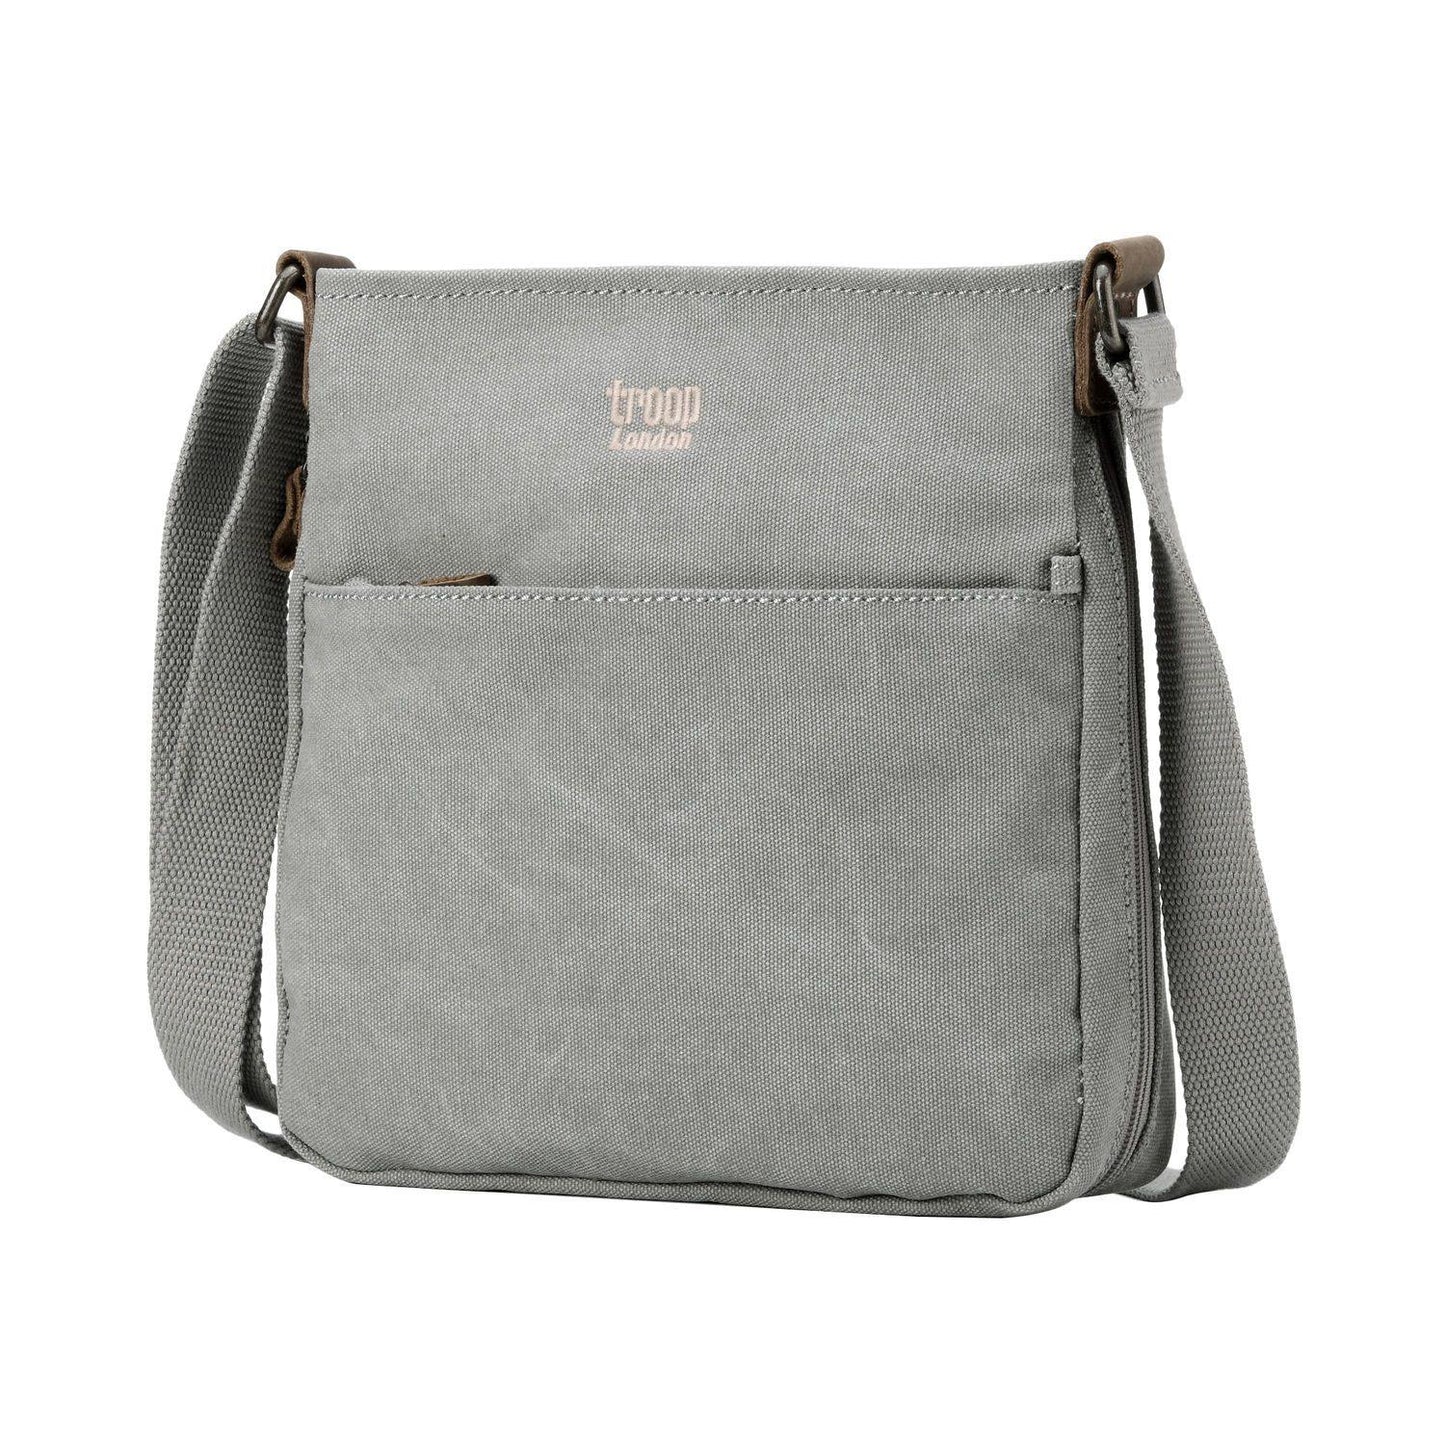 Classic Small Zip Top Shoulder Bag - Ash Grey